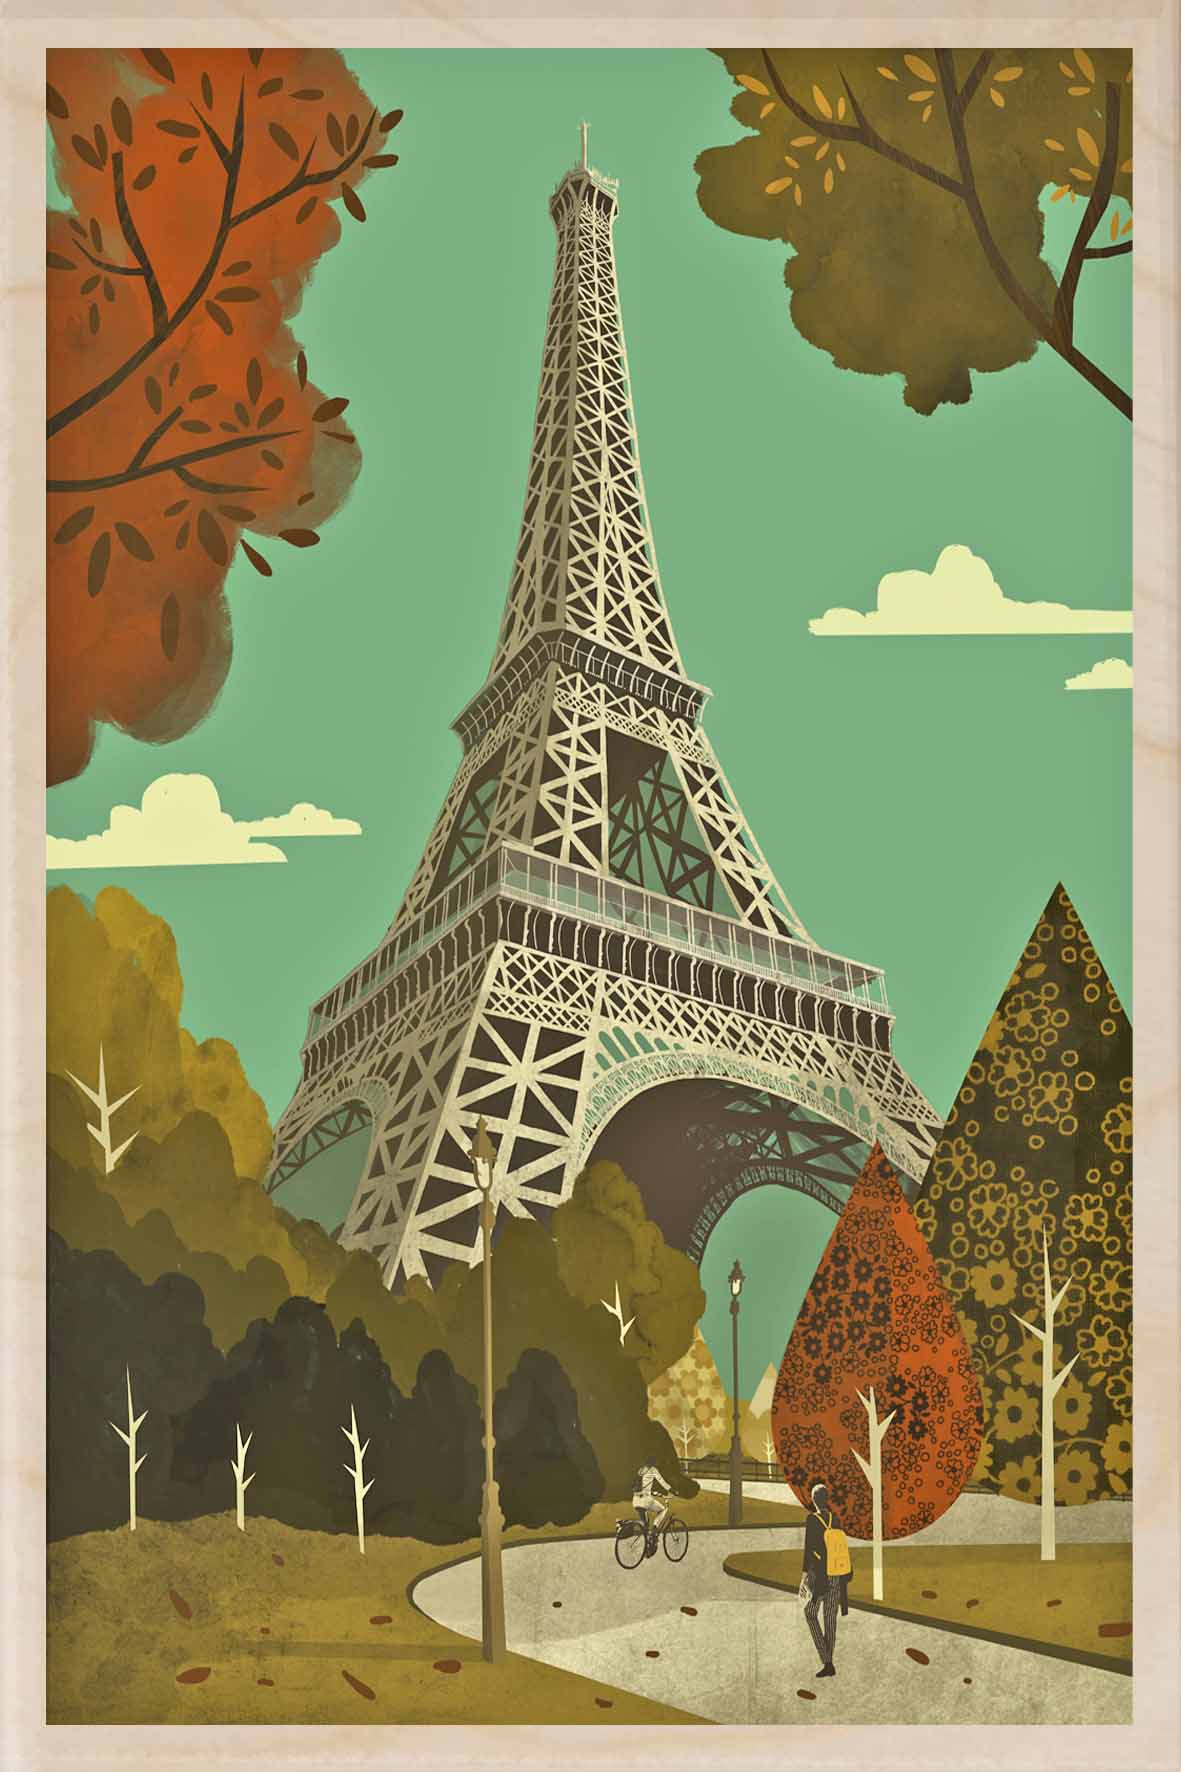 PARIS TOUR EIFFEL